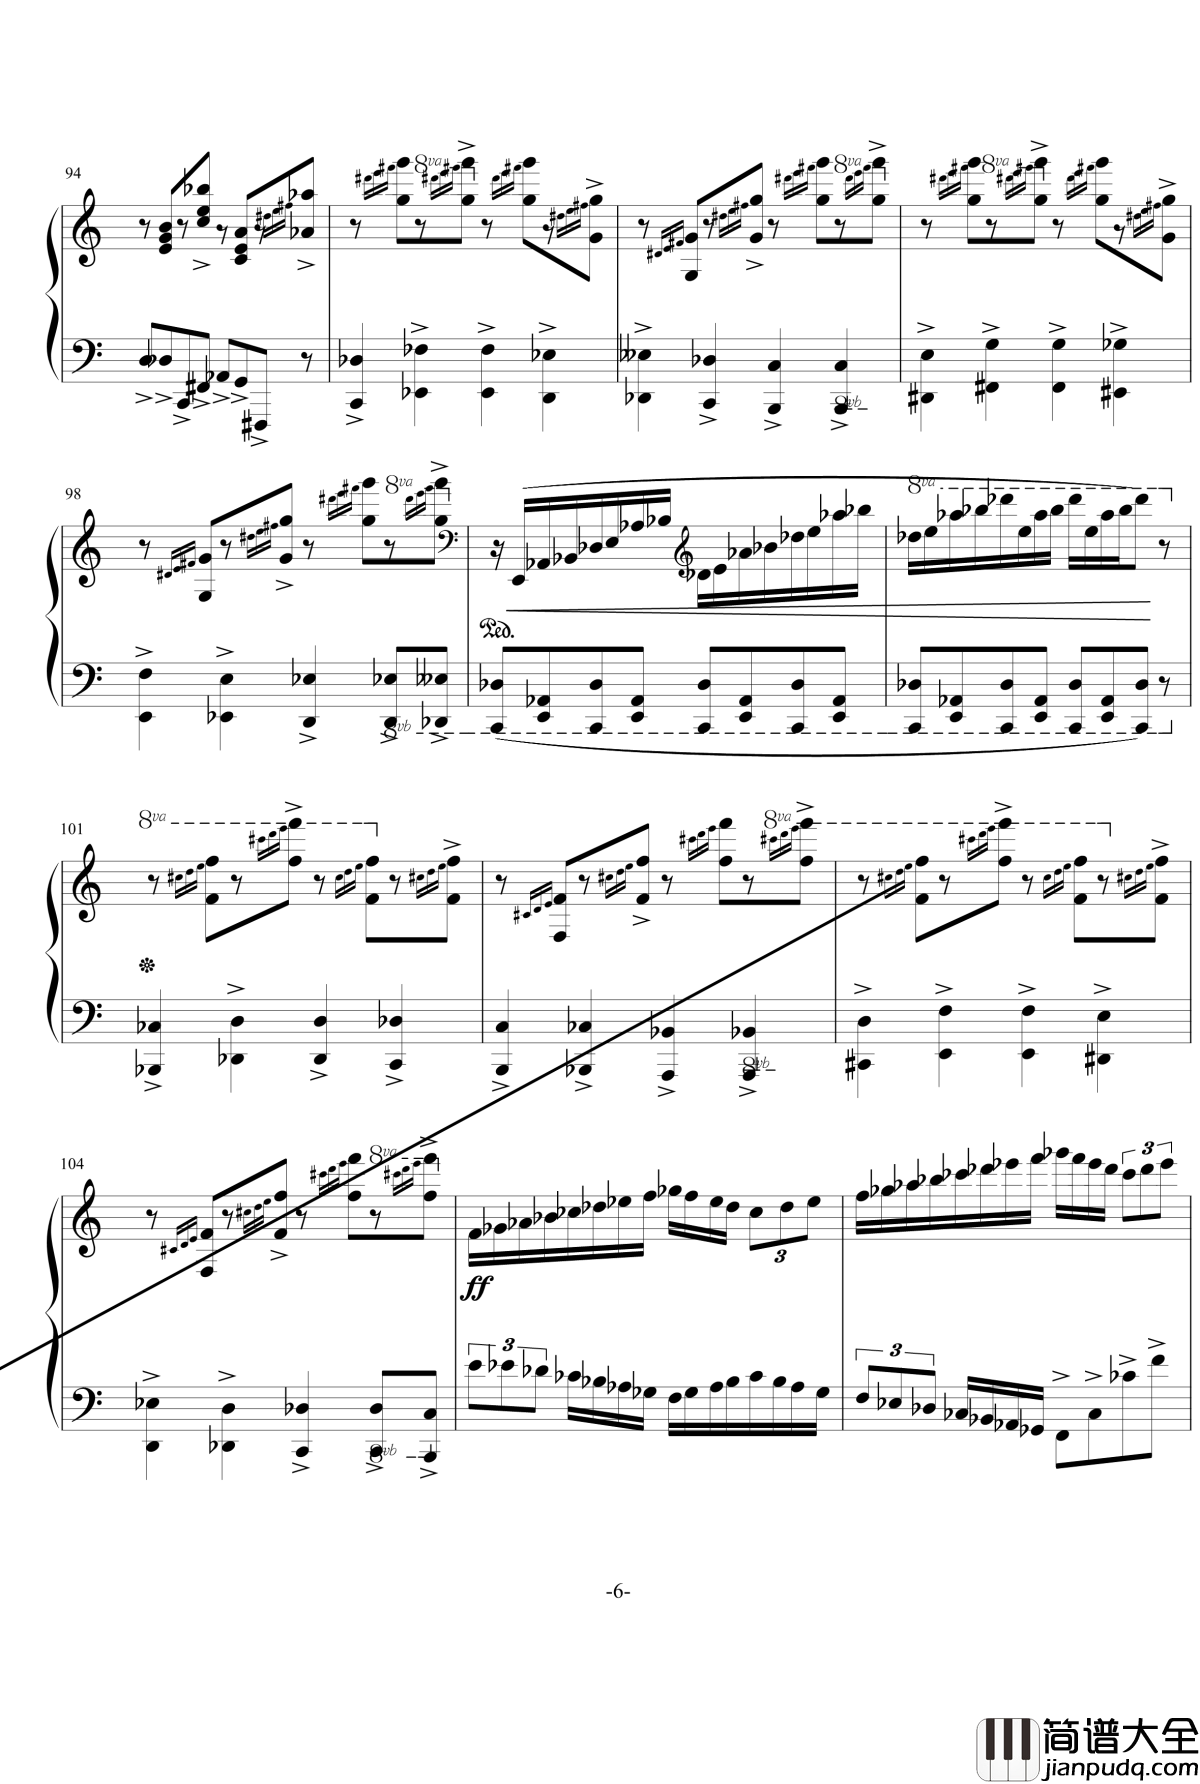 普罗科菲耶夫四首小品之四：魔鬼的诱惑钢琴谱_普罗科非耶夫